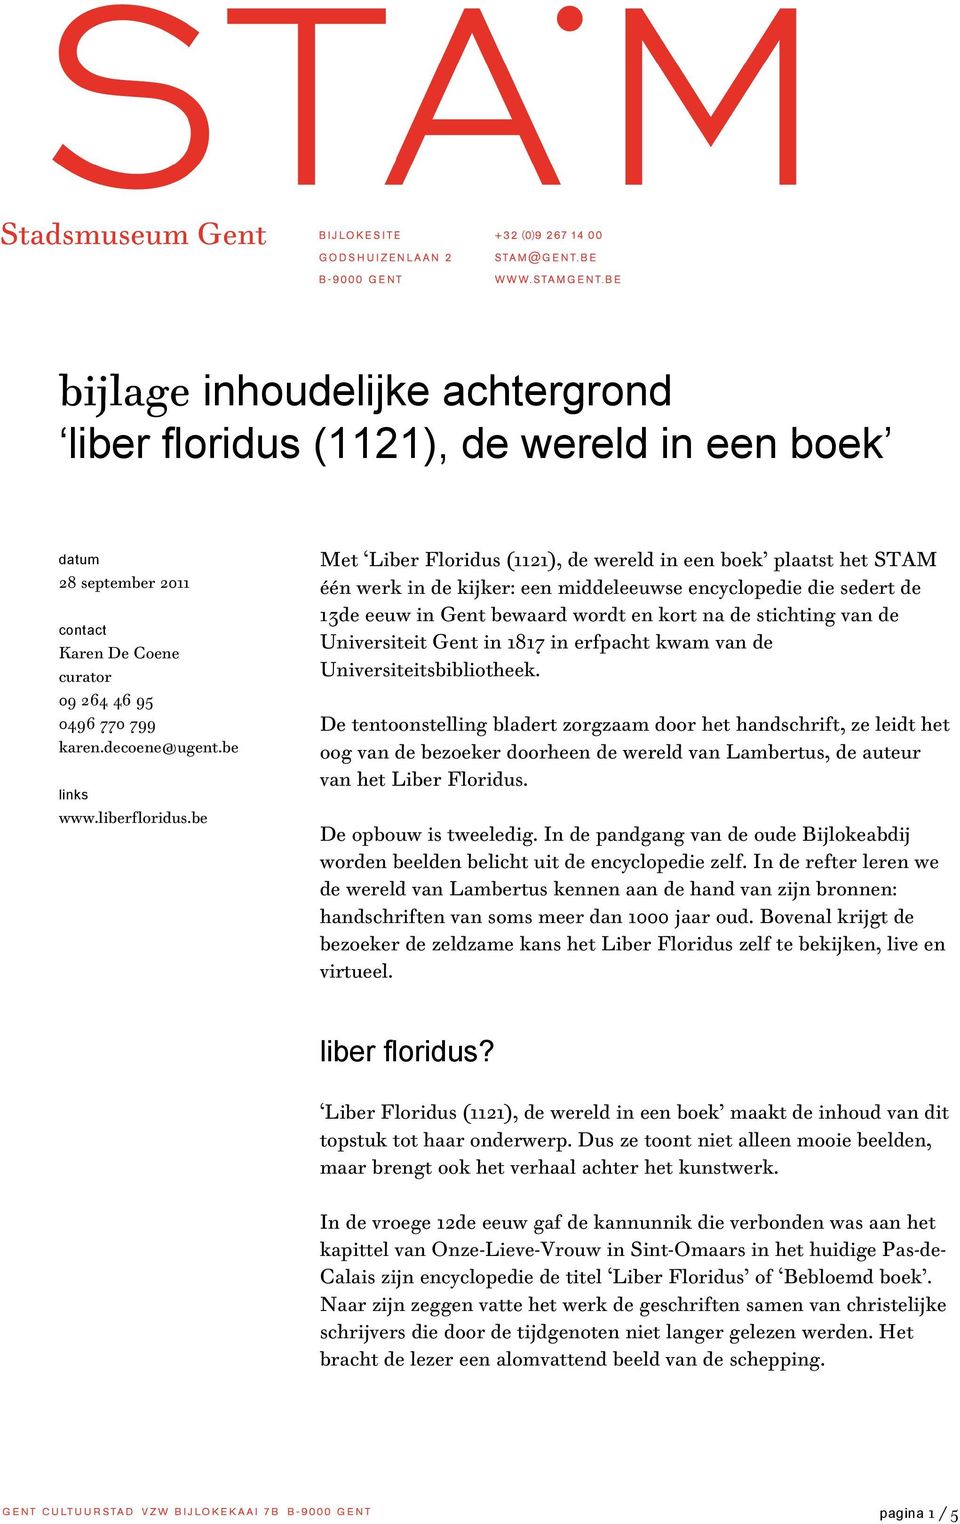 be Met Liber Floridus (1121), de wereld in een boek plaatst het STAM één werk in de kijker: een middeleeuwse encyclopedie die sedert de 13de eeuw in Gent bewaard wordt en kort na de stichting van de